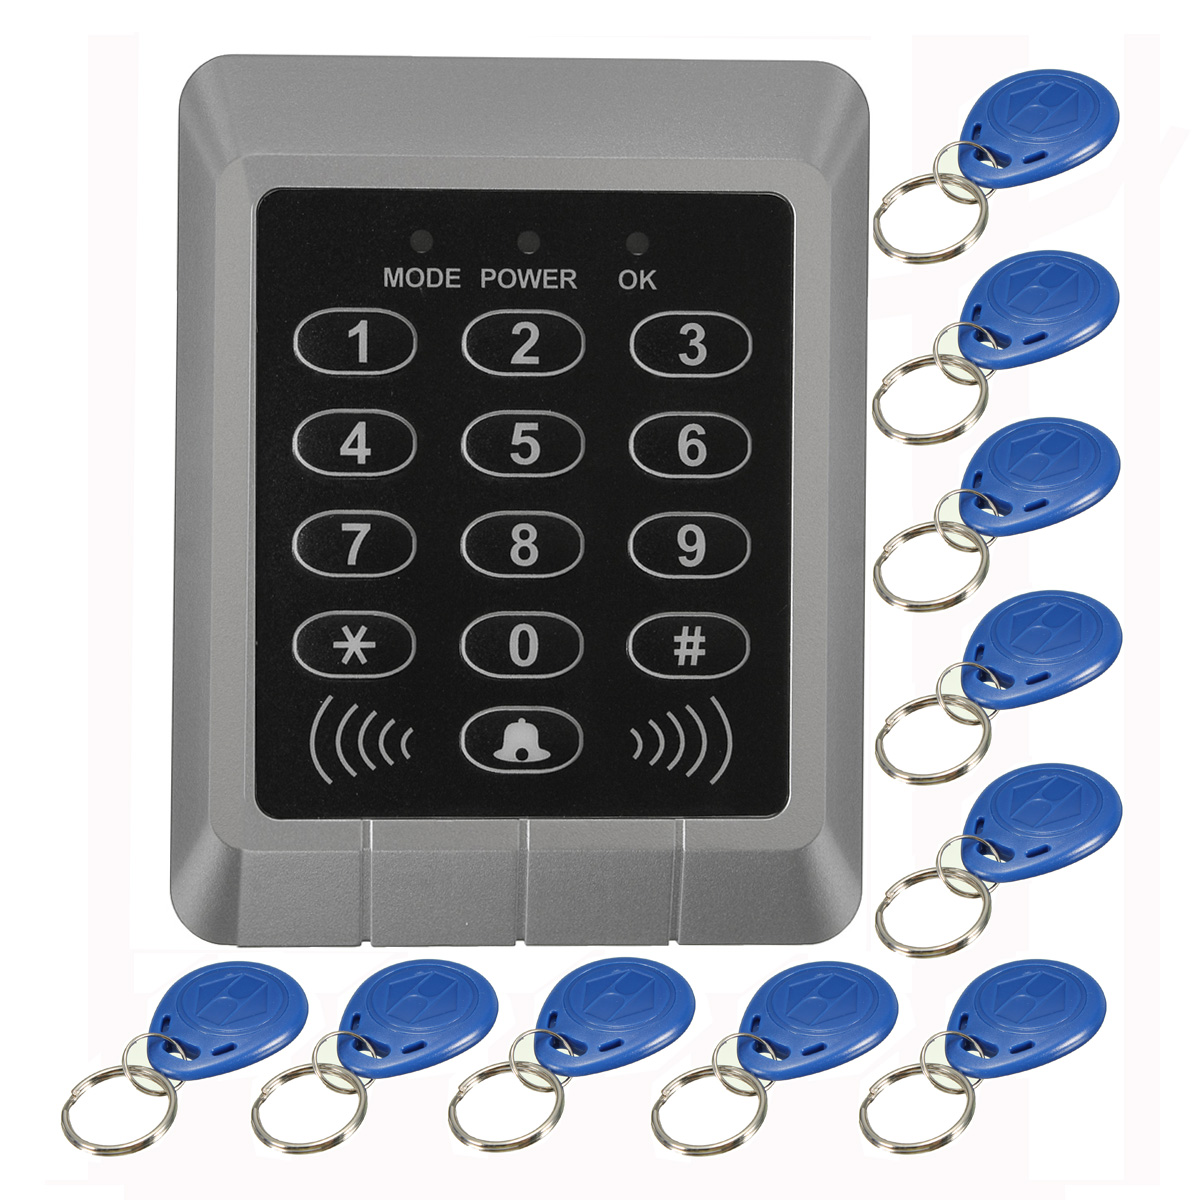 

RFID Security Reader Entry Door Lock keypad Access Control System+10 Pcs Keys